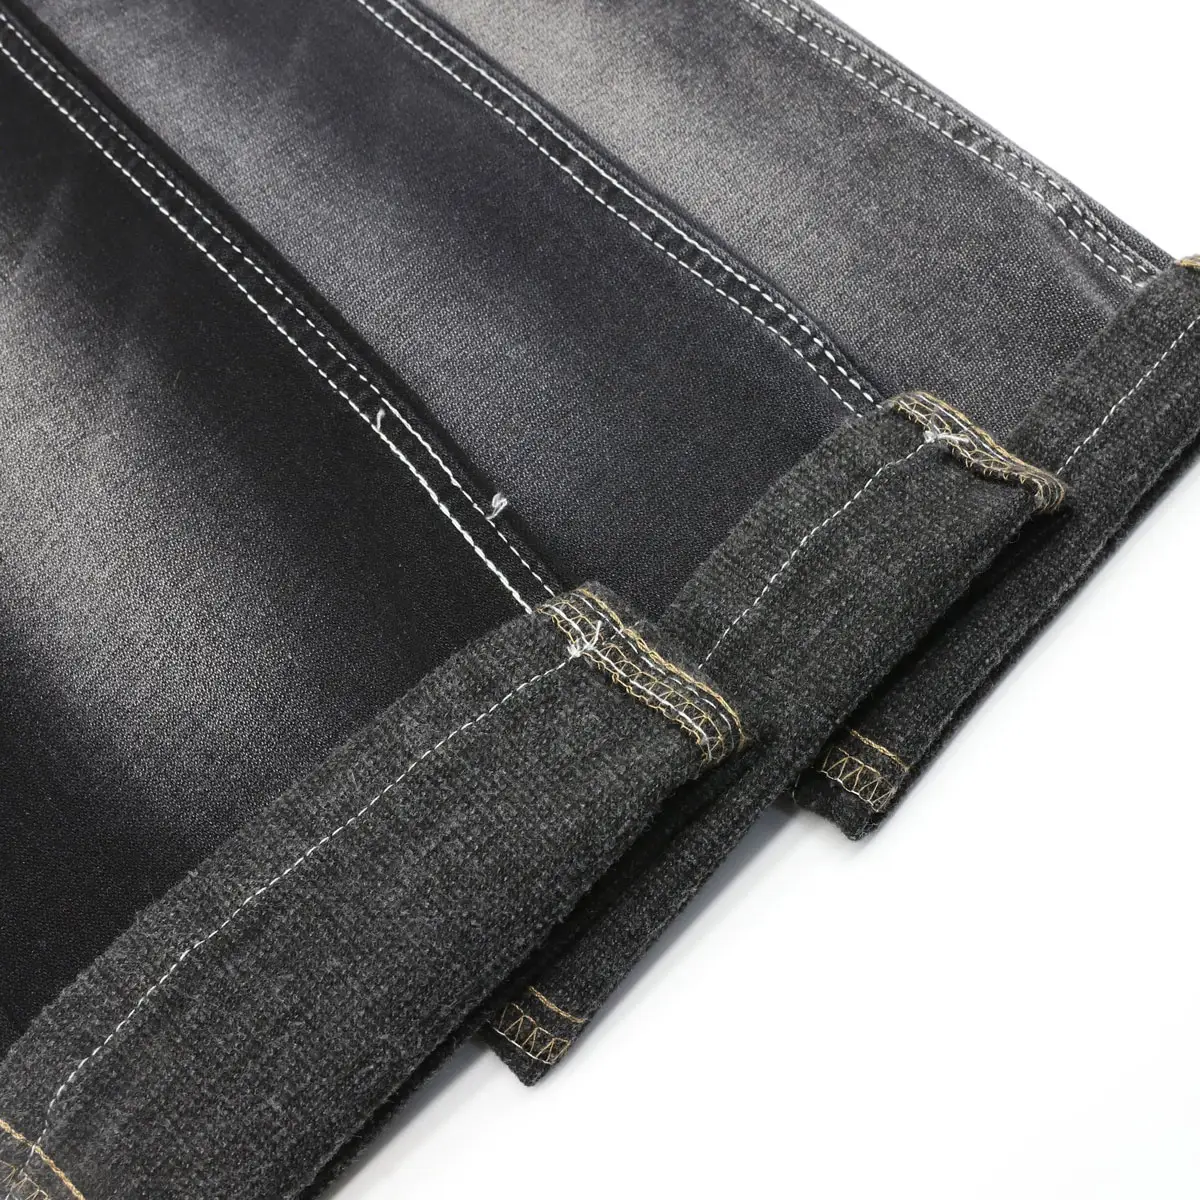 Black fleece denim with brushed backside denim fabric for winter jeans/garments